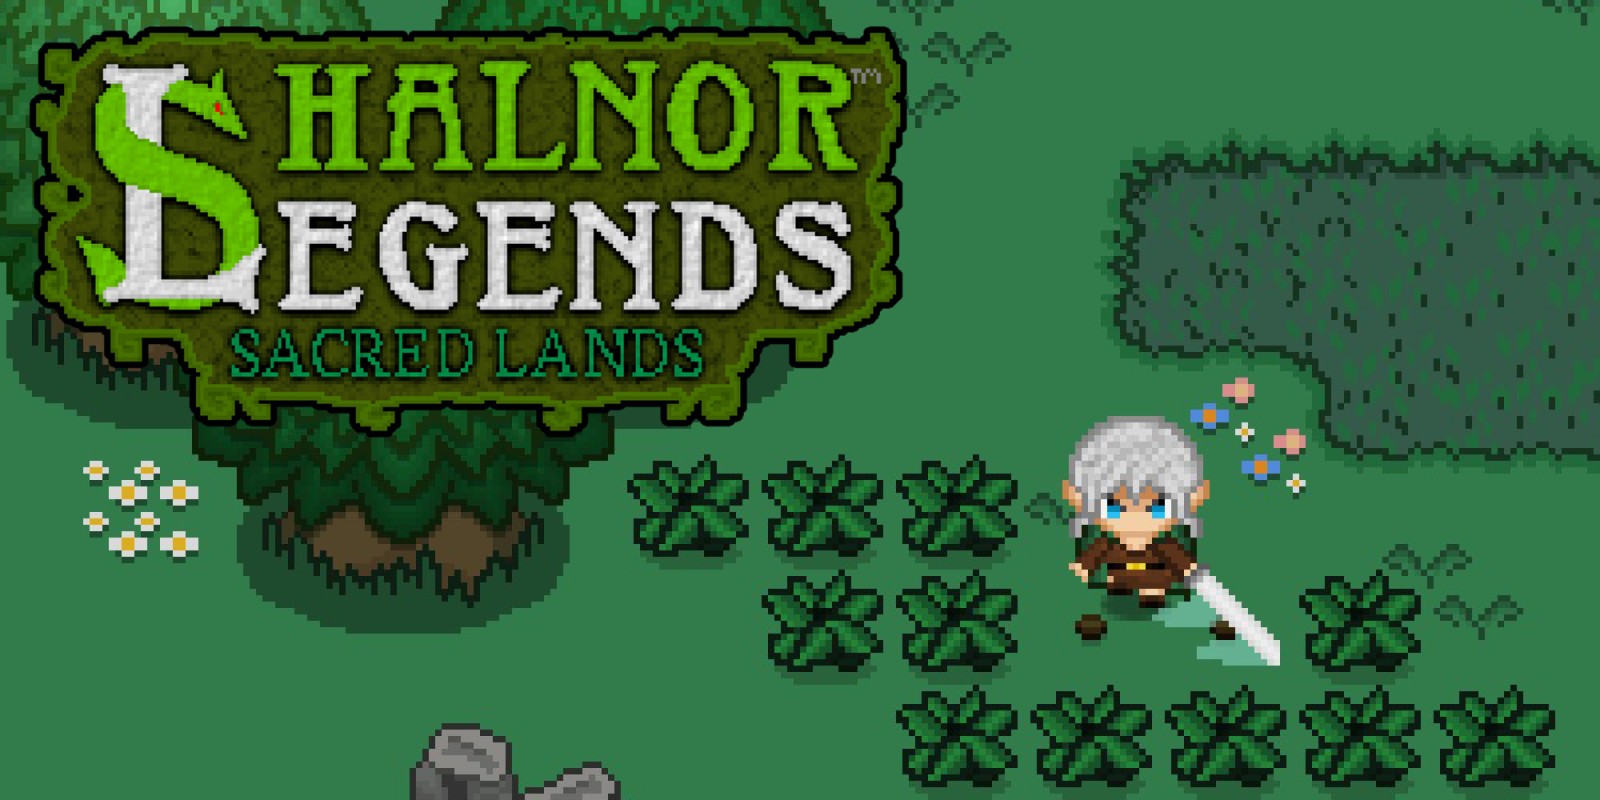 for apple download Shalnor Legends 2: Trials of Thunder